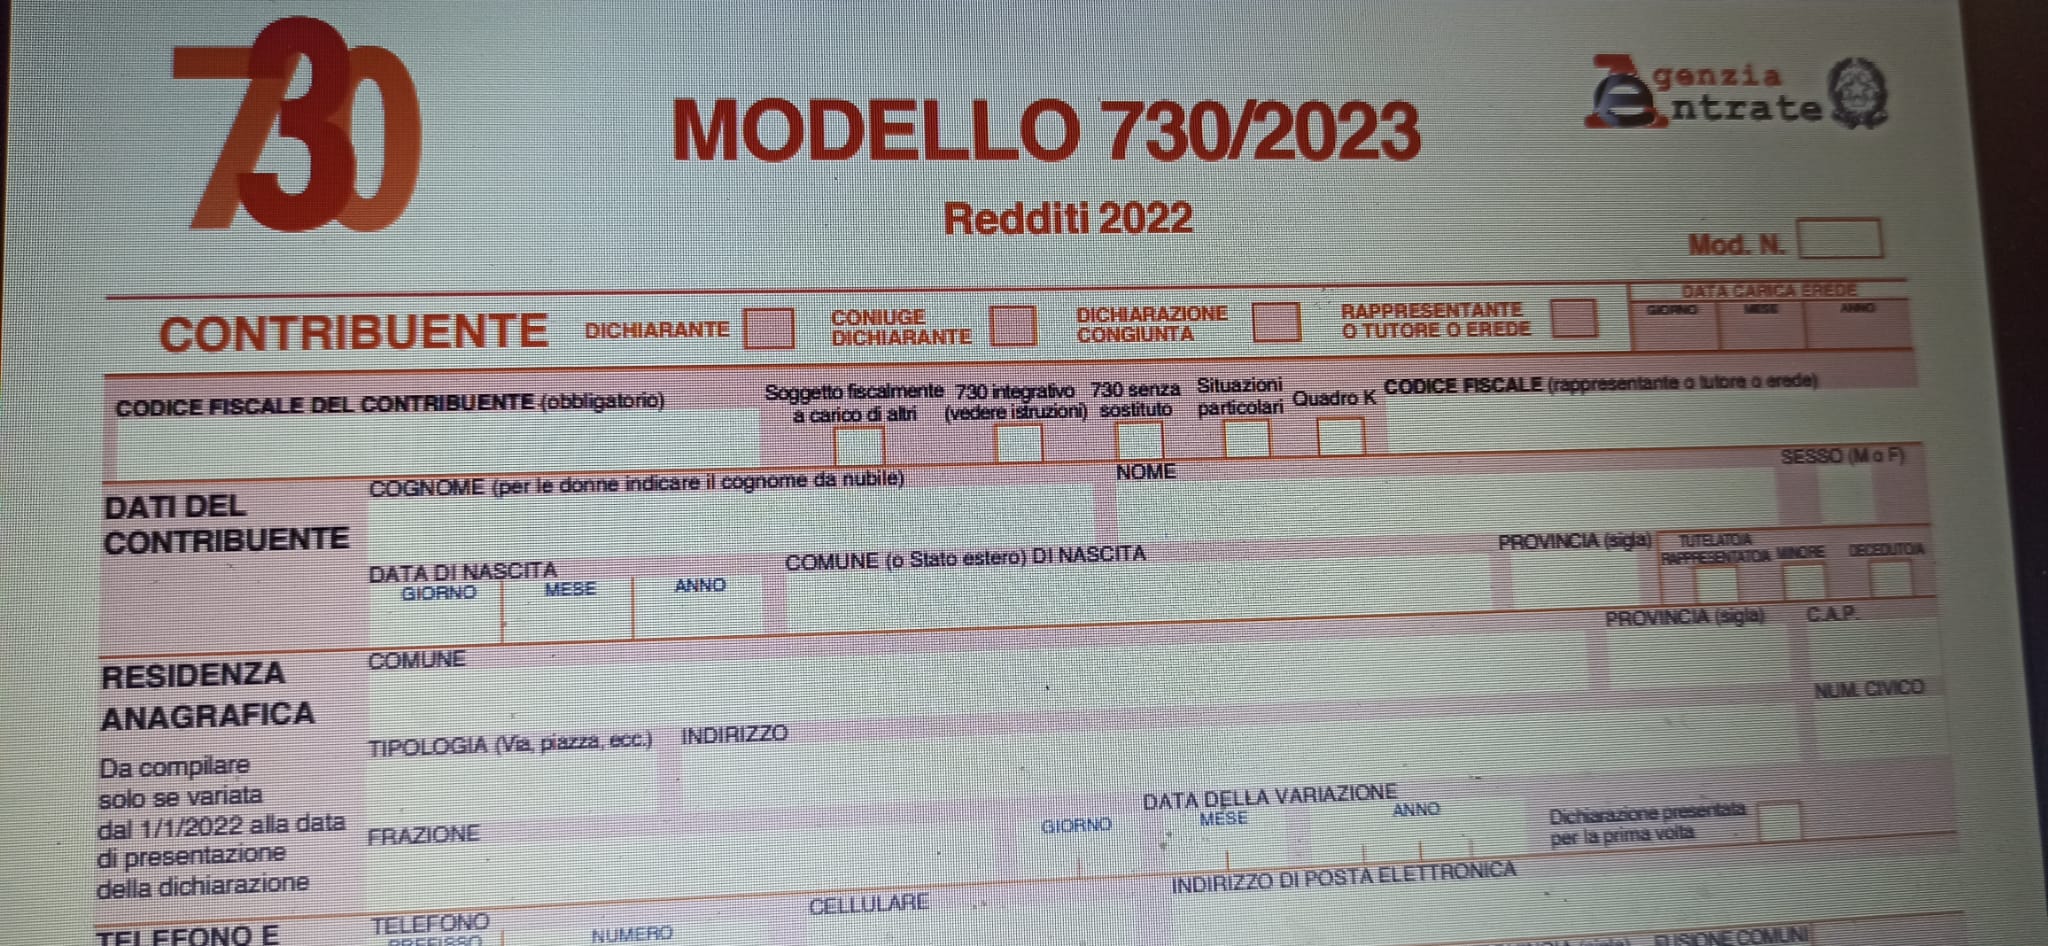 Errori nel modello 730/2023 precompilato, cosa fare?